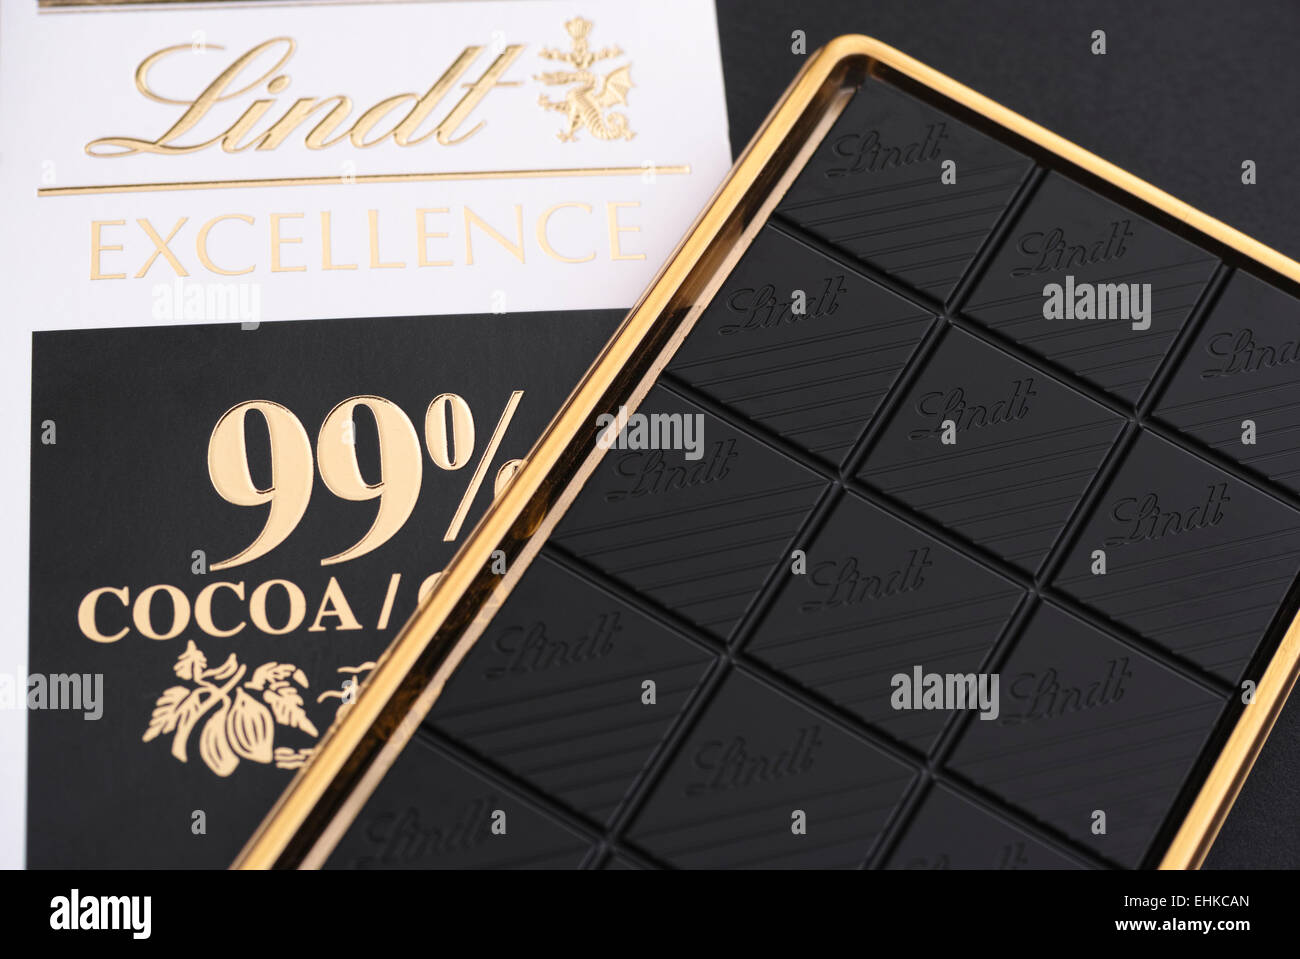 Tambov, Fédération de Russie - Février 26, 2015 Chocolat noir Lindt  Excellence 99 % cacao tablette de chocolat. Studio shot Photo Stock - Alamy